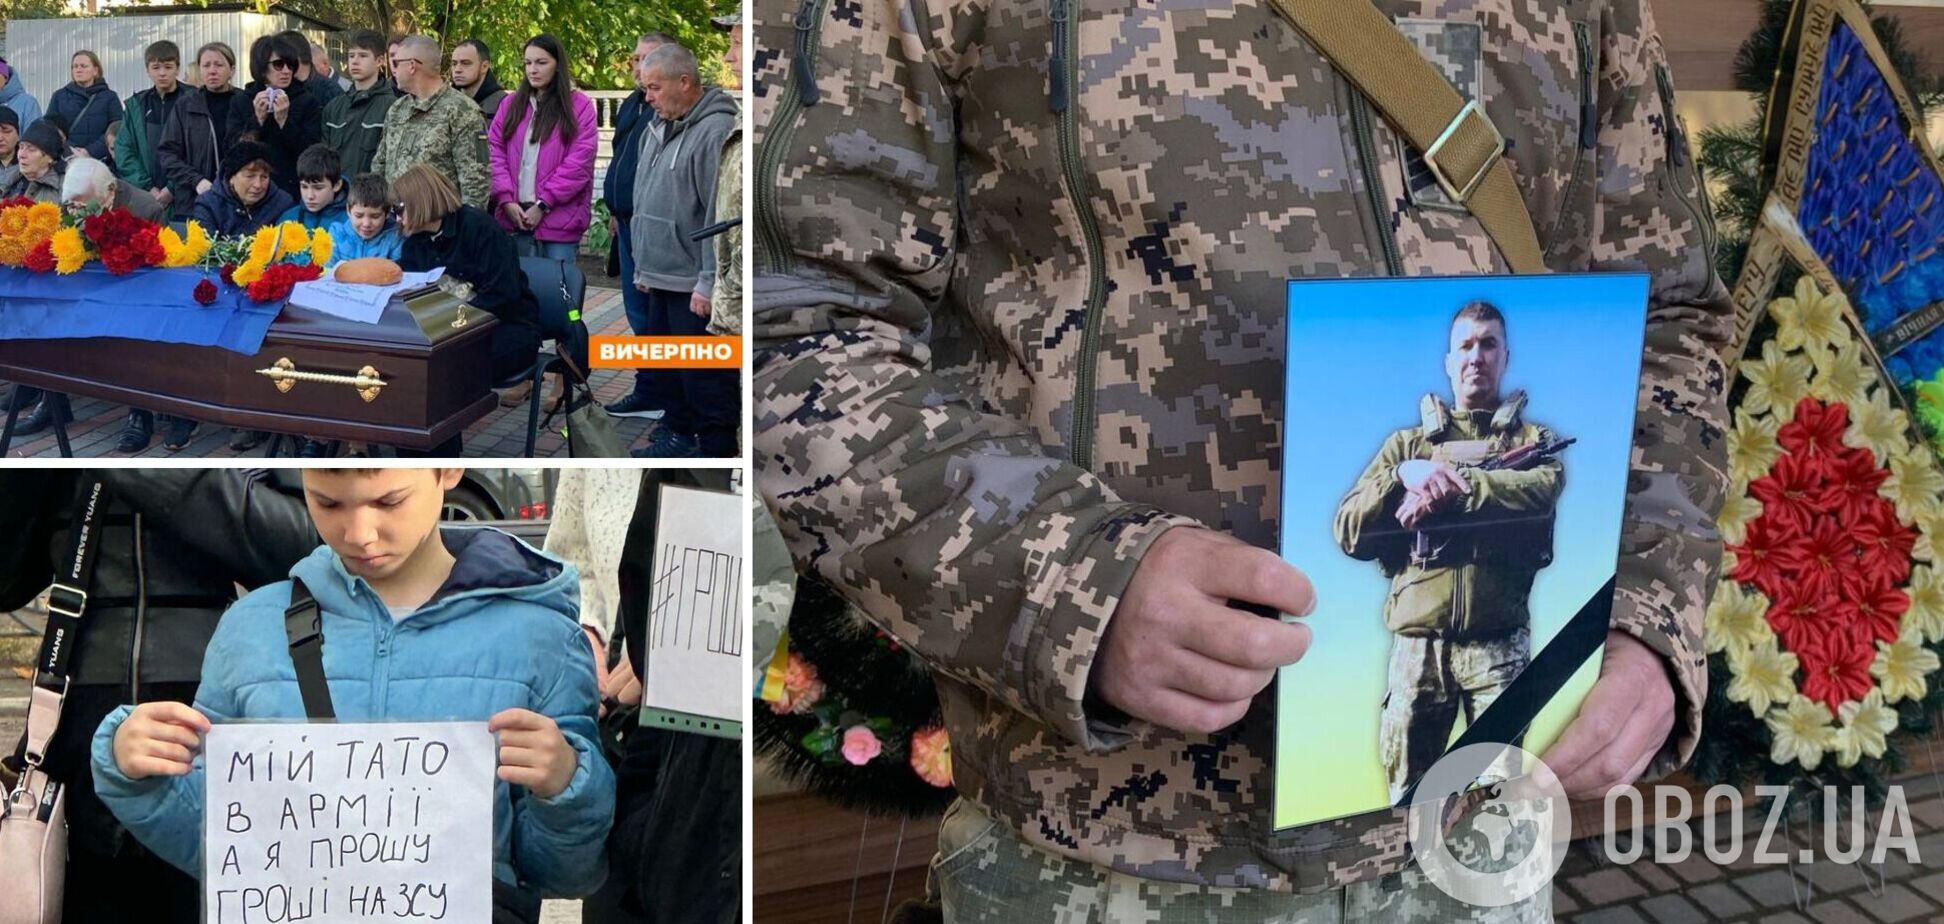 'Мій тато в армії': у Черкасах попрощалися з воїном, маленький син якого просив направити кошти з місцевого бюджету на ЗСУ. Фото 